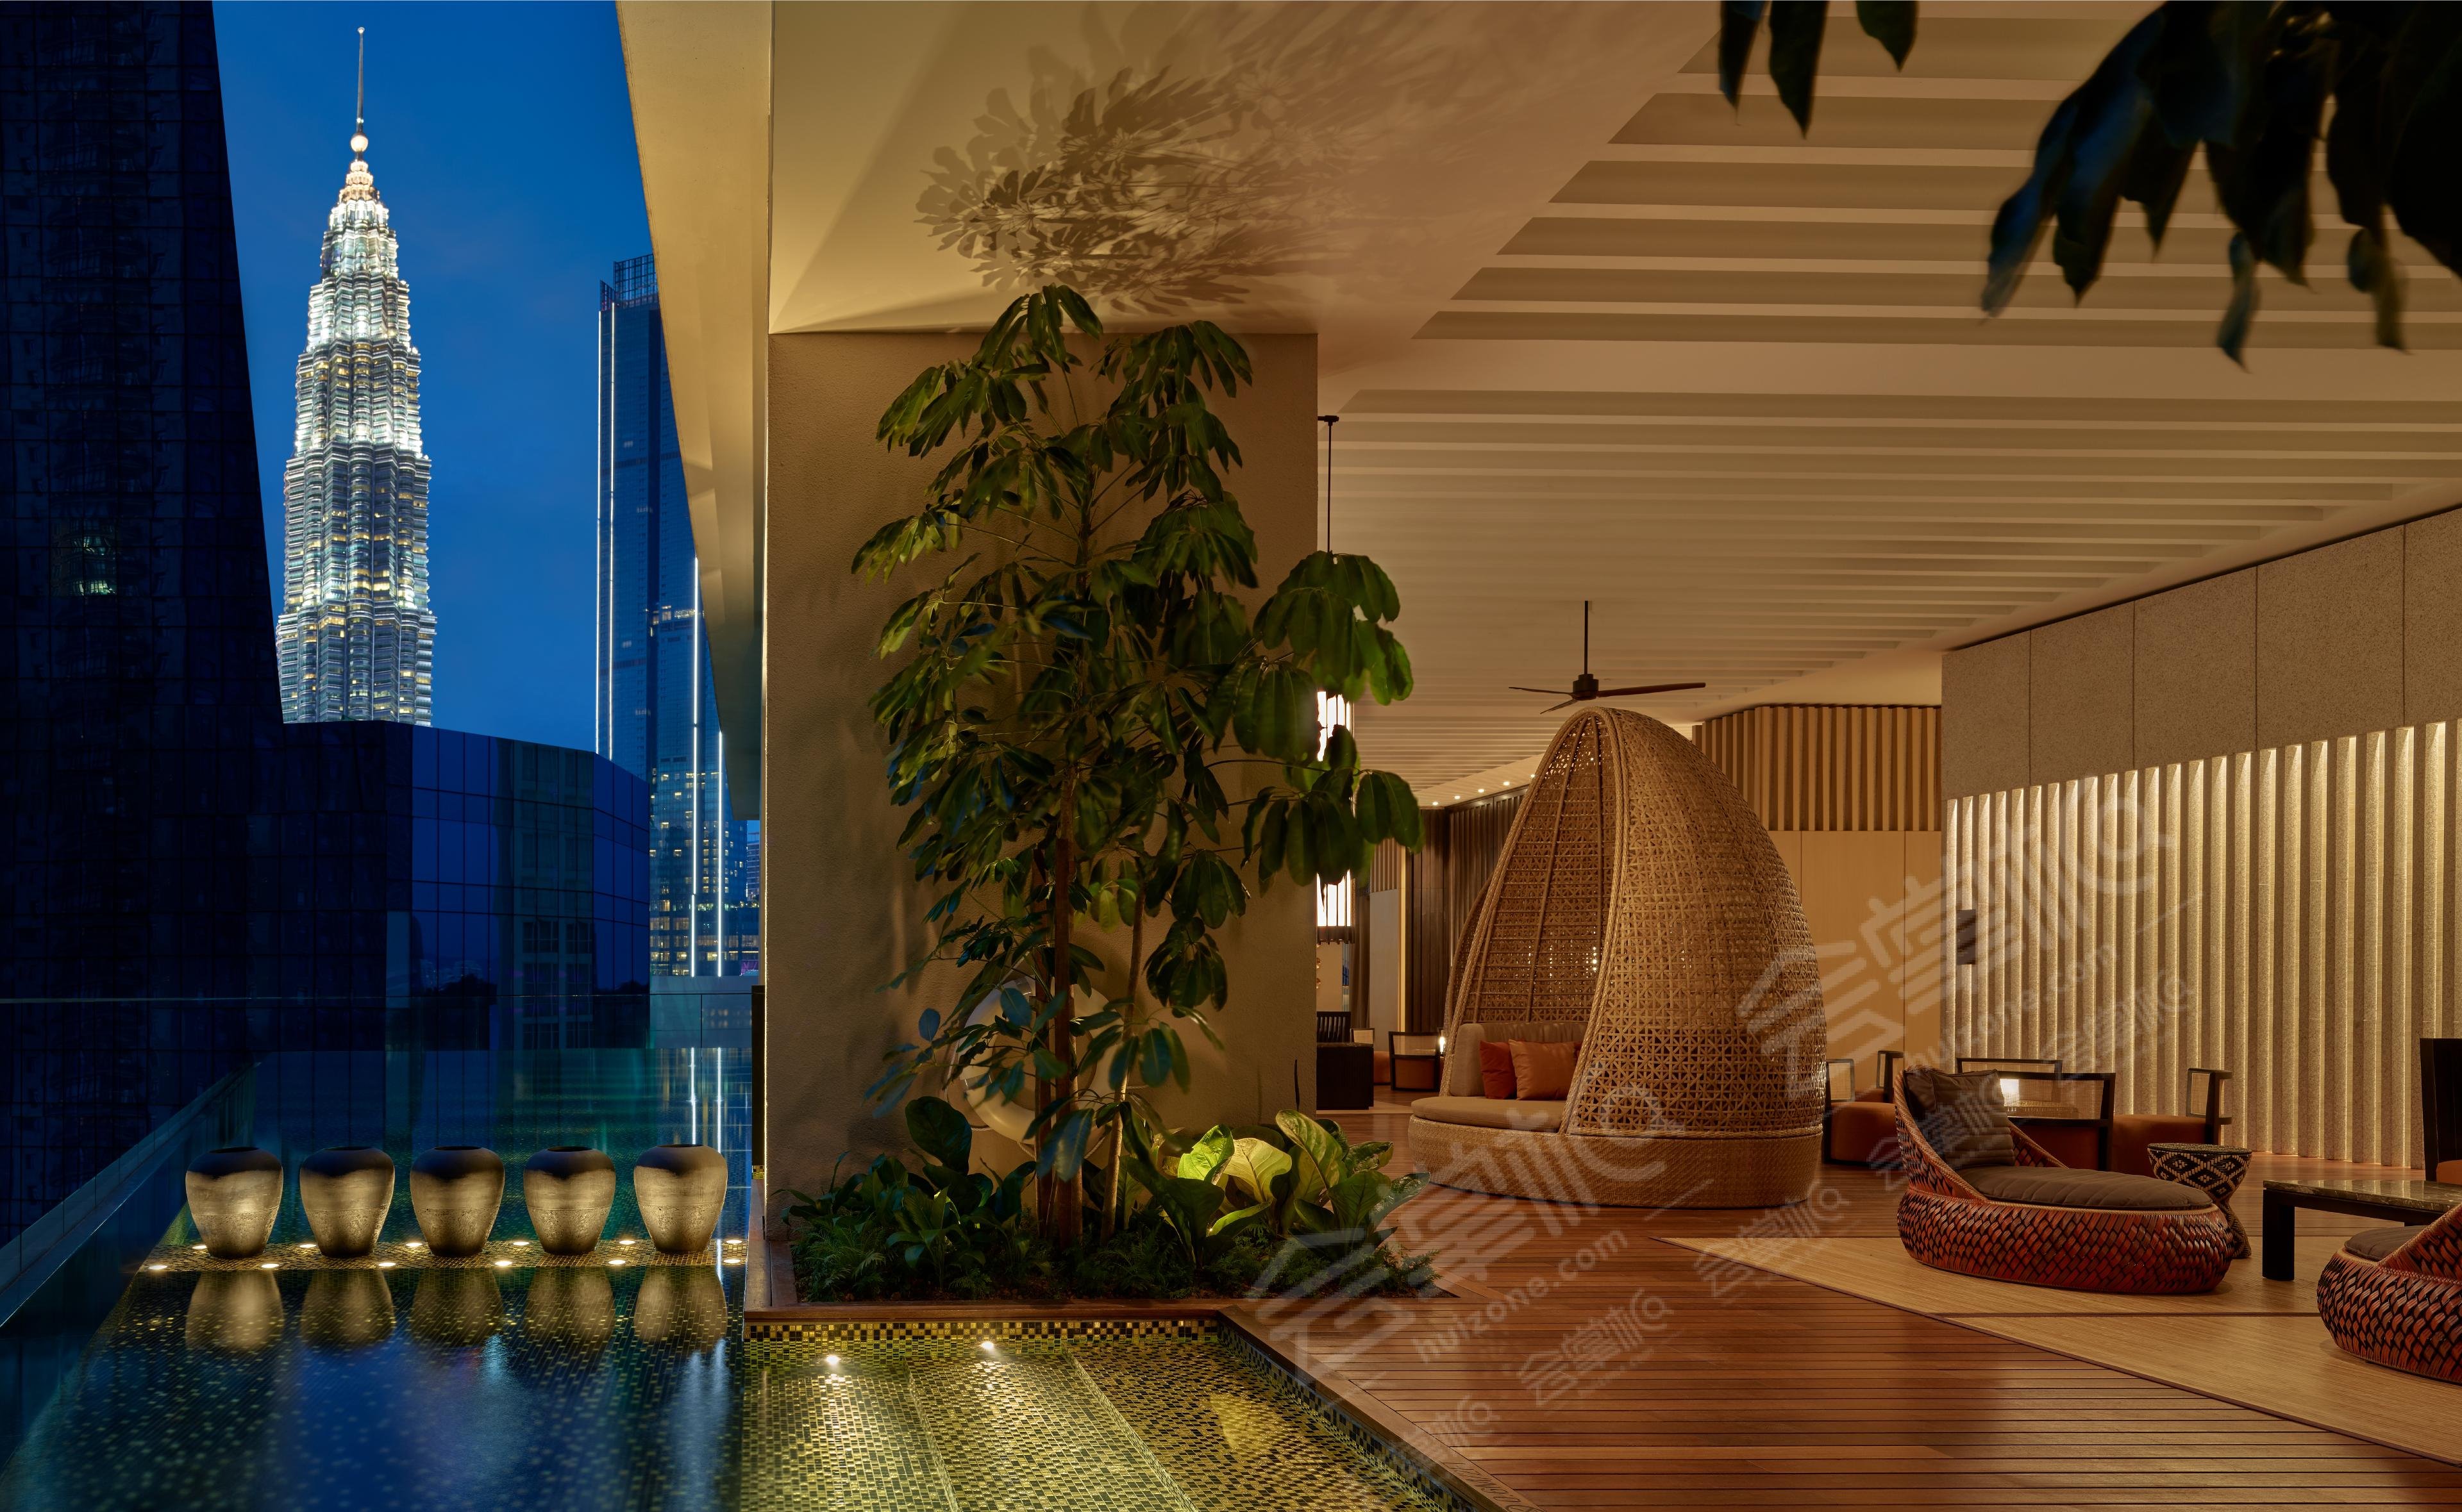 吉隆坡五星级酒店最大容纳400人的会议场地|如玛吉隆玻市中心高级大酒店(The RuMa Hotel and Residences)的价格与联系方式